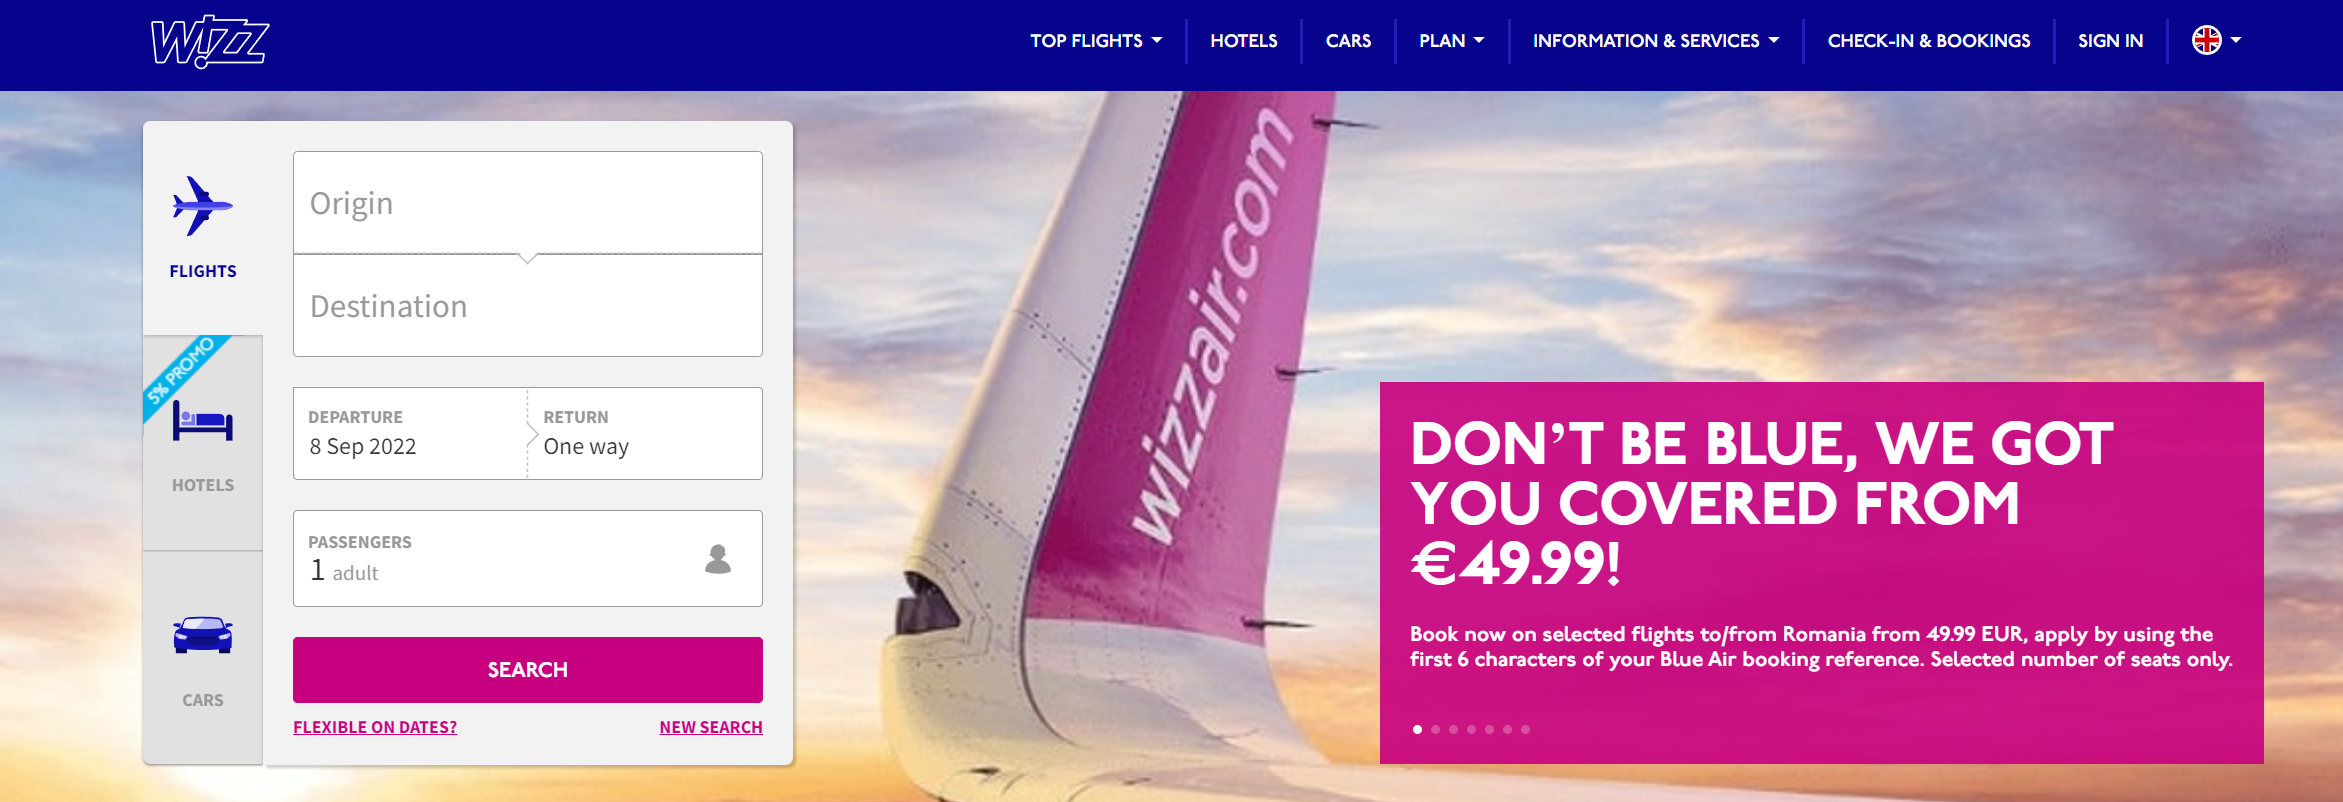 Cum profită Wizz Air de problemele Blue Air (varianta în engleză)